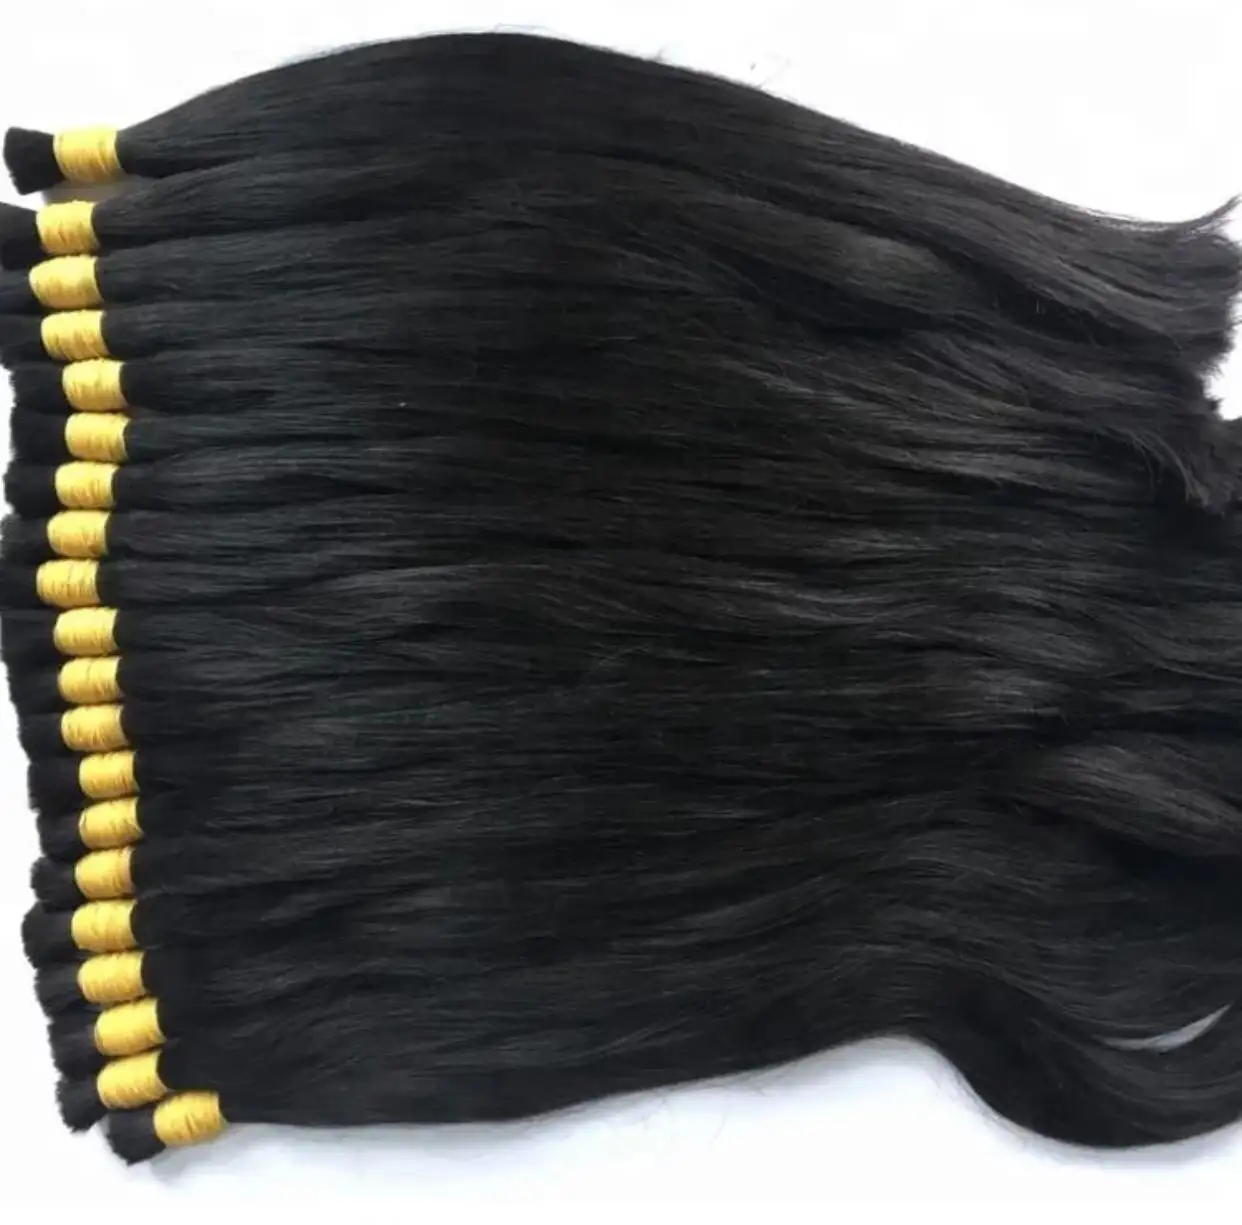 Новогодние предложения, волосы с глубокими волнами, волосы, связанные вручную, индийские человеческие волосы для наращивания, необработанный Пучок Волос на специальных предложениях